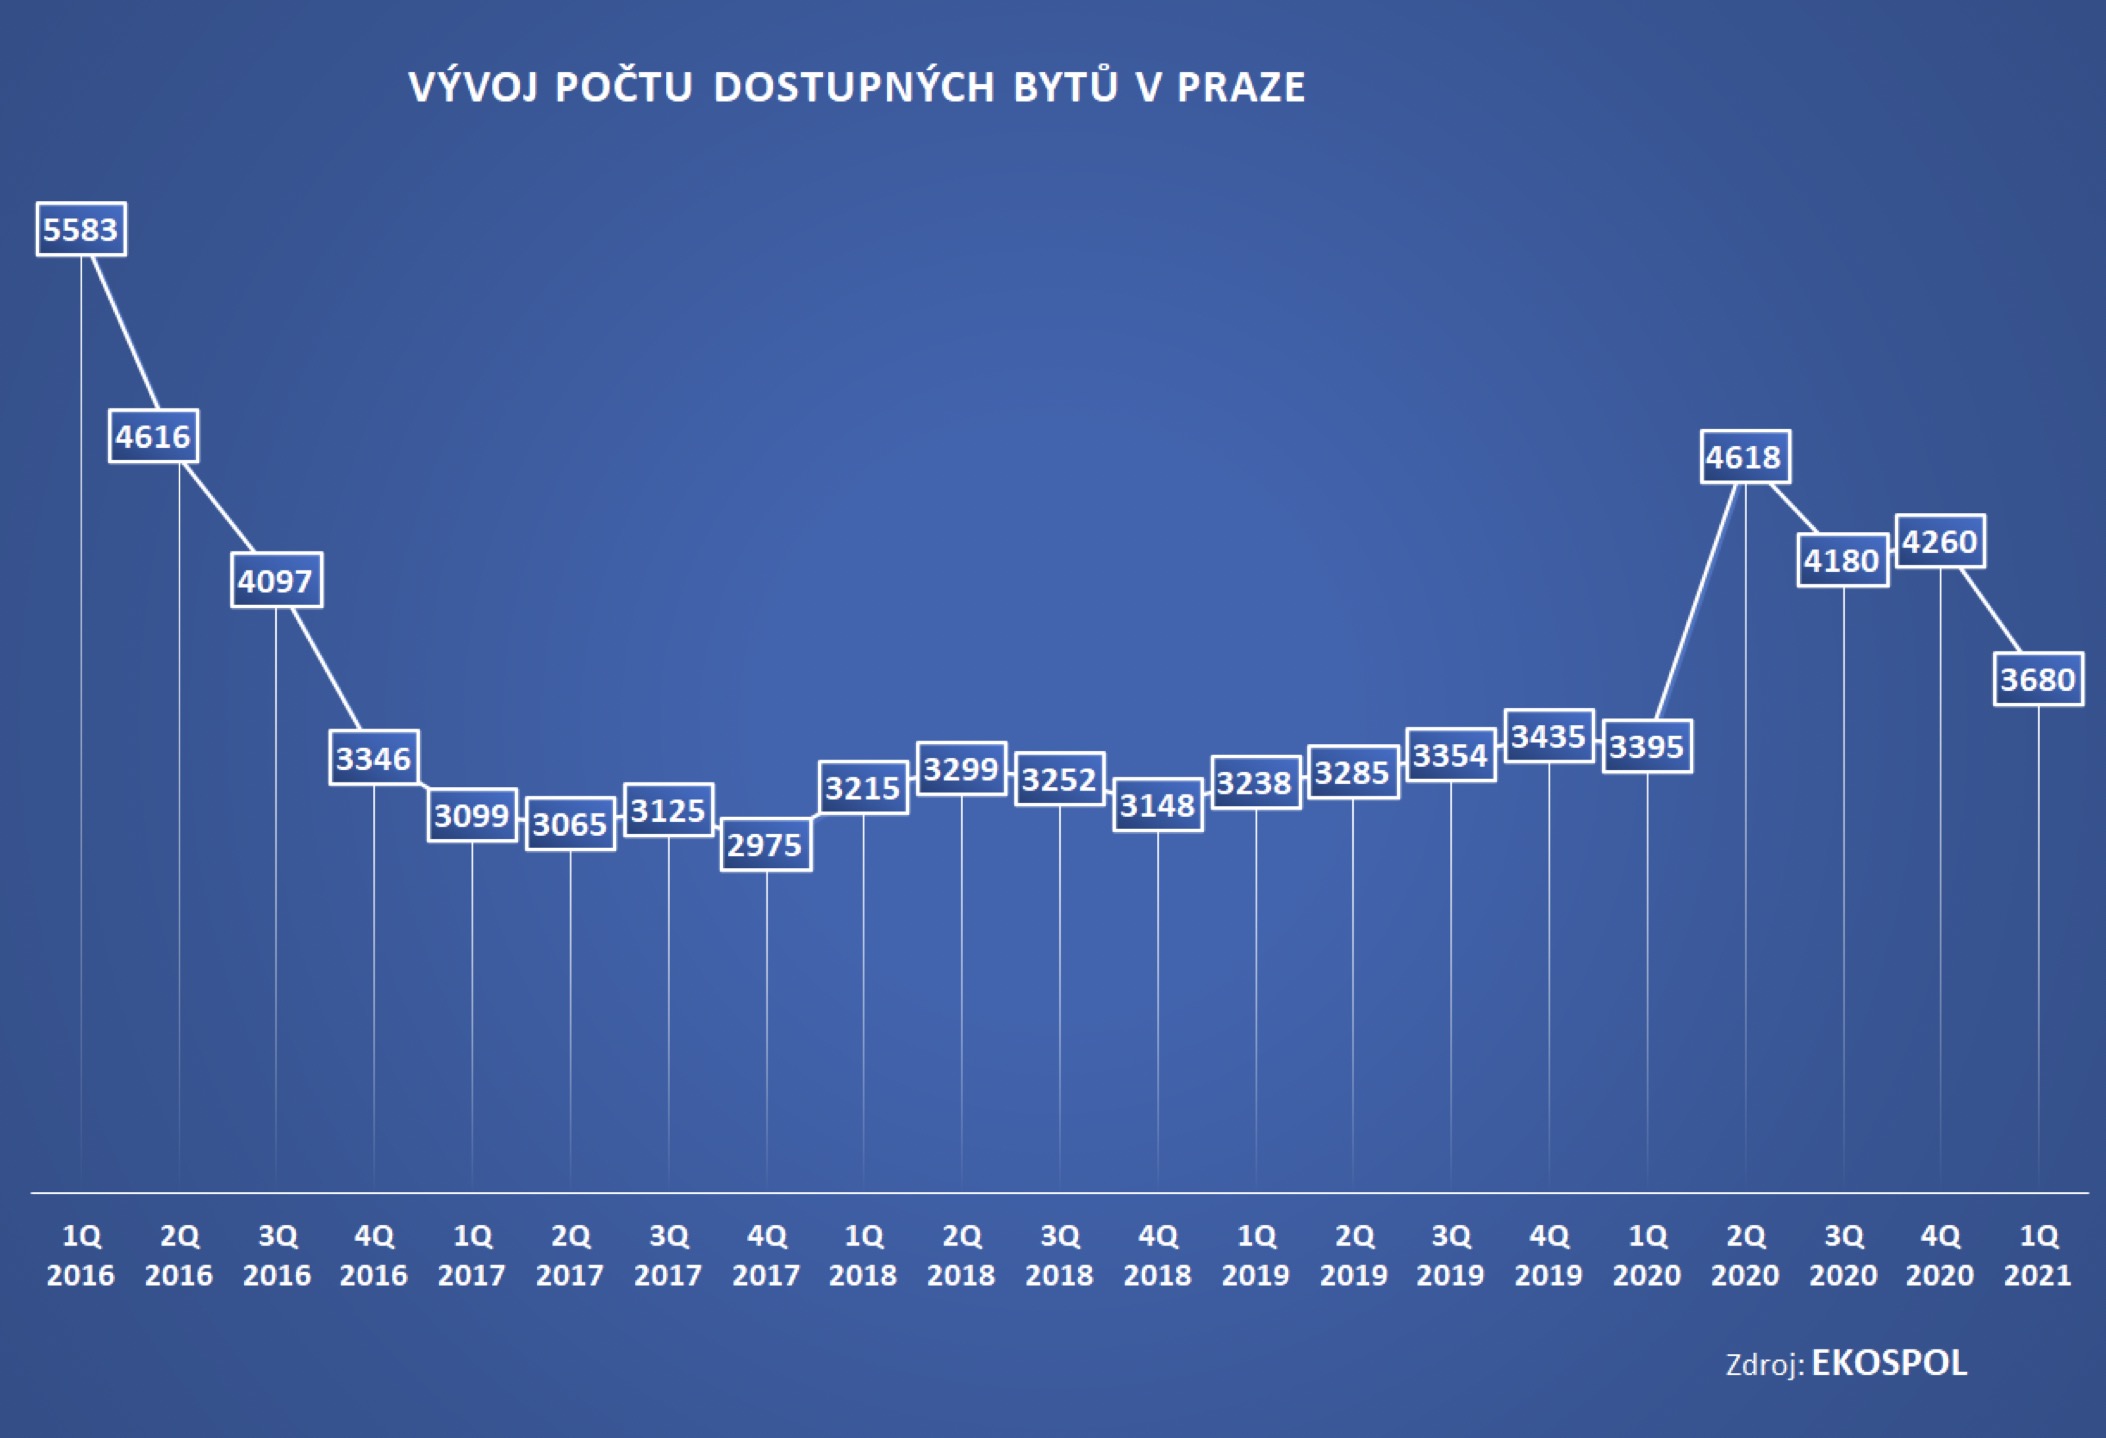 Vývoj počtu dostupných bytů v Praze 2016 - 2021